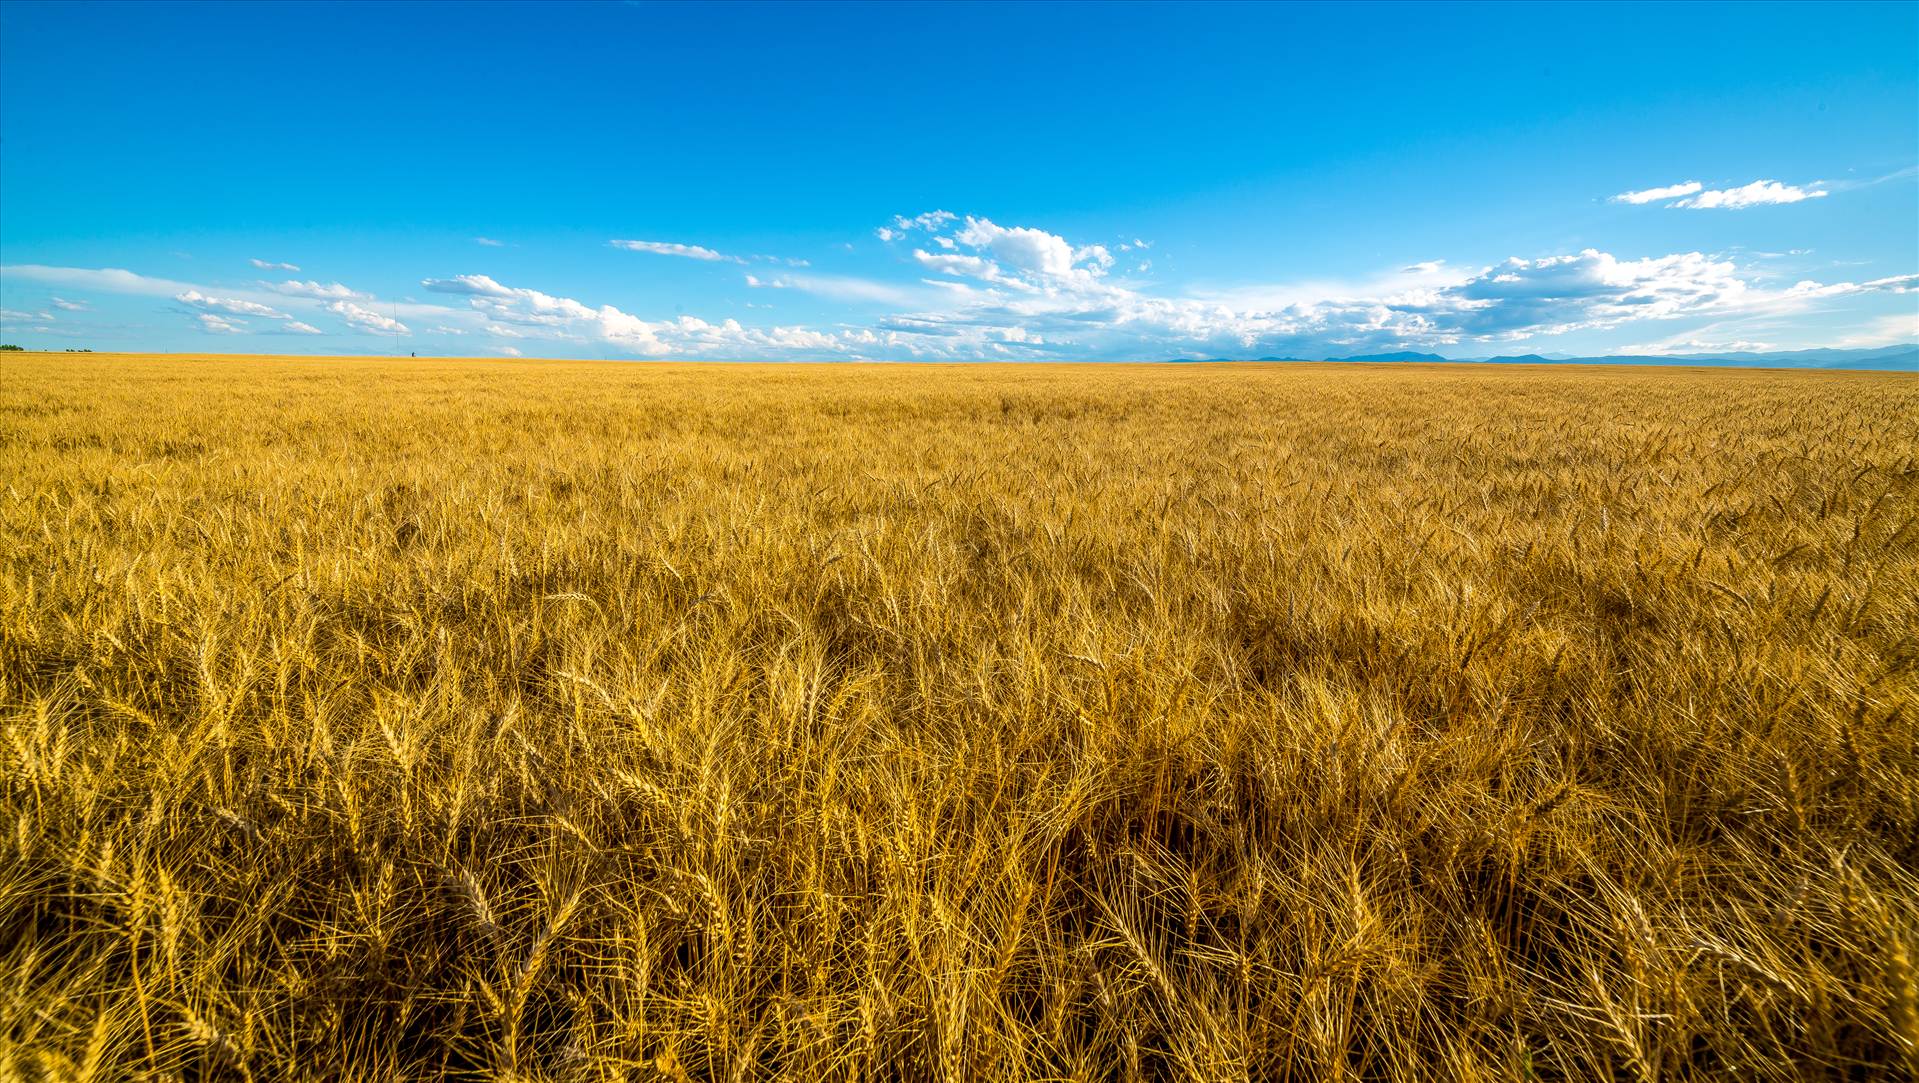 Summer Fields I Wheat fields near Longmont, Colorado by Scott Smith Photos